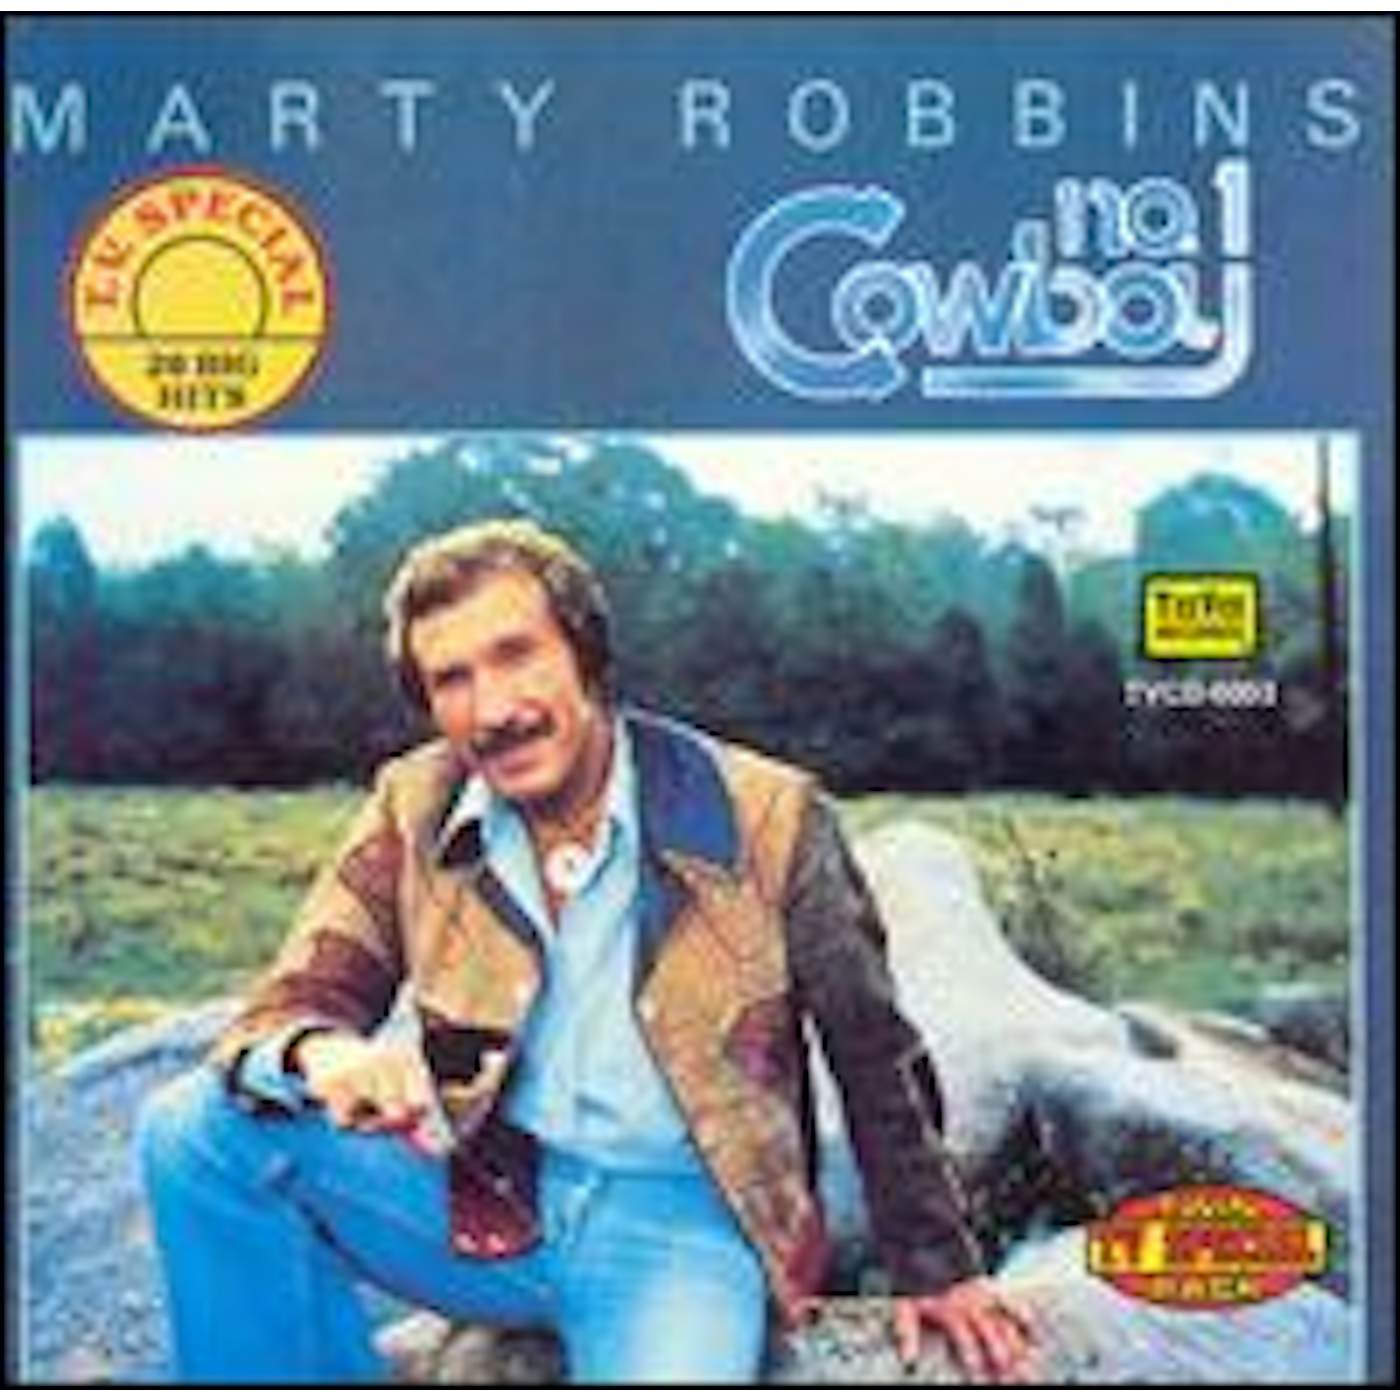 Marty Robbins 1 COWBOY CD